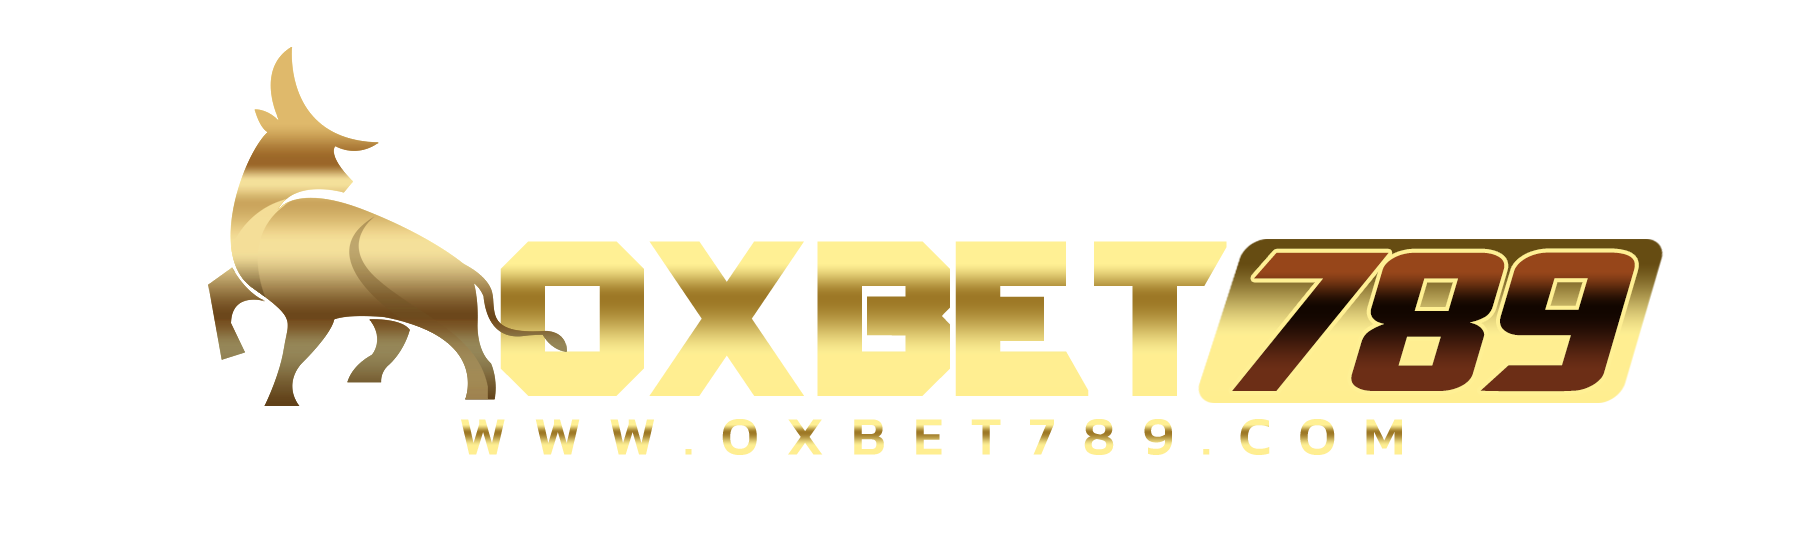 Oxbet789 สล็อตมาแรง สล็อตภาพสวย ทุนน้อยแตกหนัก ได้เงินจริง รับสูตรจาวิส ได้แล้ววันนี้